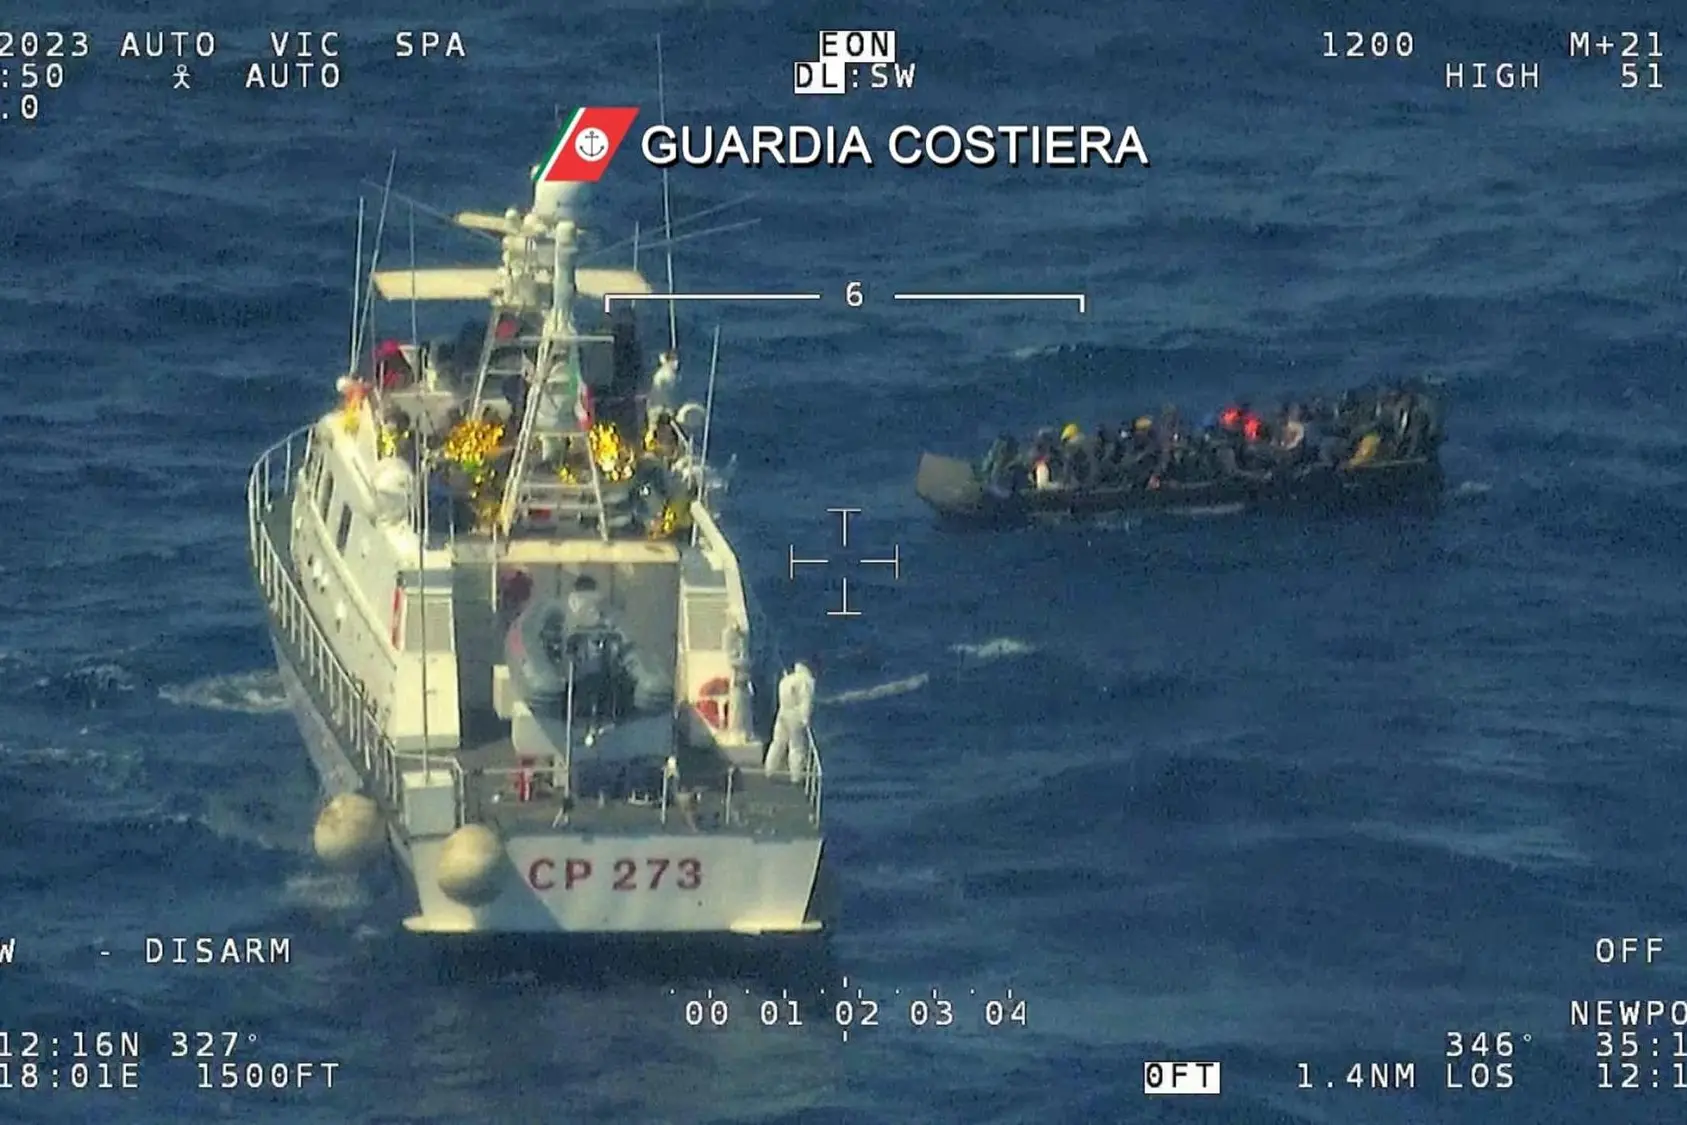 Le operazioni di soccorso della Guardia Costiera con due barconi in difficoltà a largo dello Ionio (Ansa)